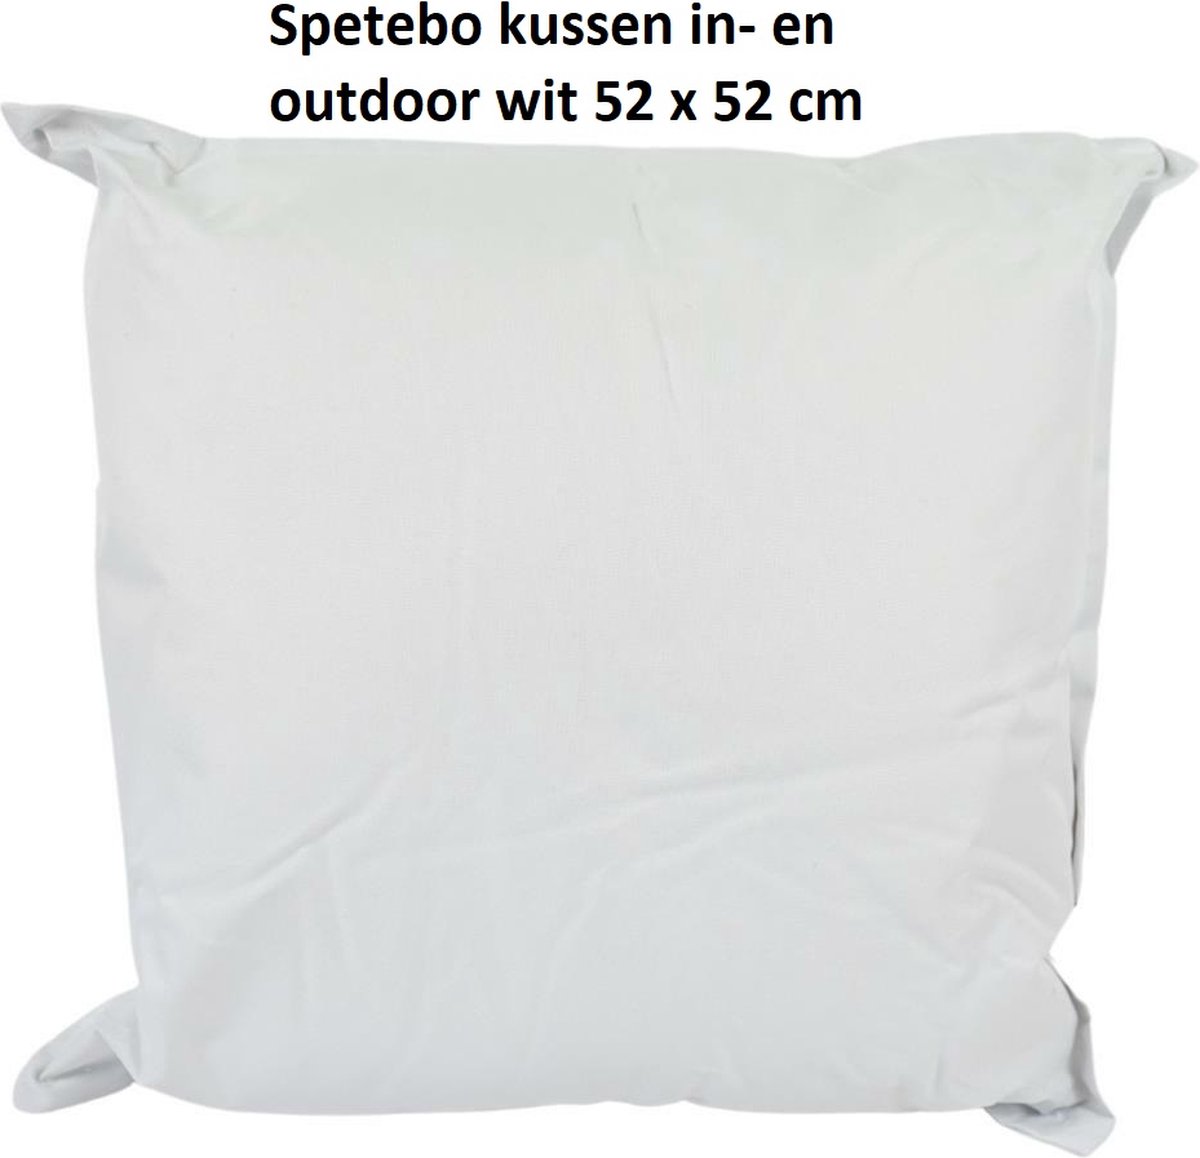 Spetebo kussen in- en outdoor wit 52 x 52 cm